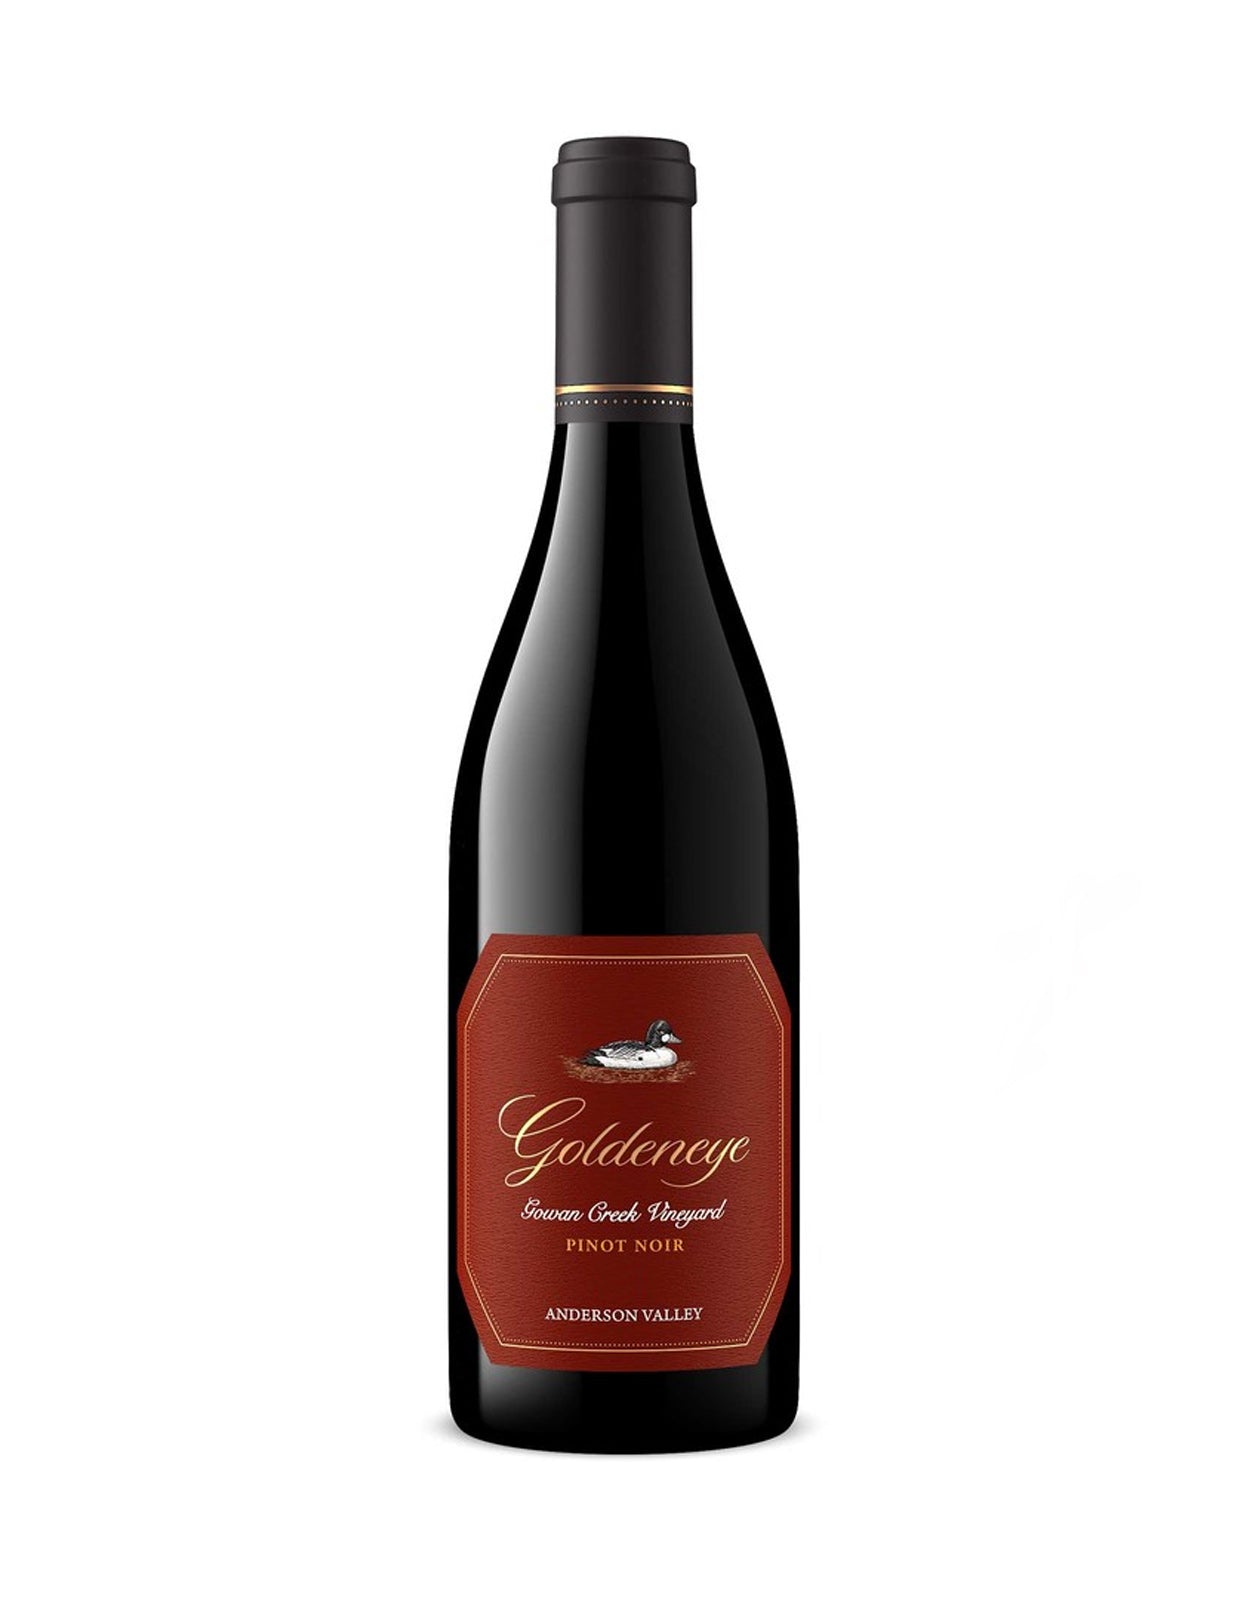 Goldeneye Pinot Noir 'Gowan Creek Vineyard' 2016